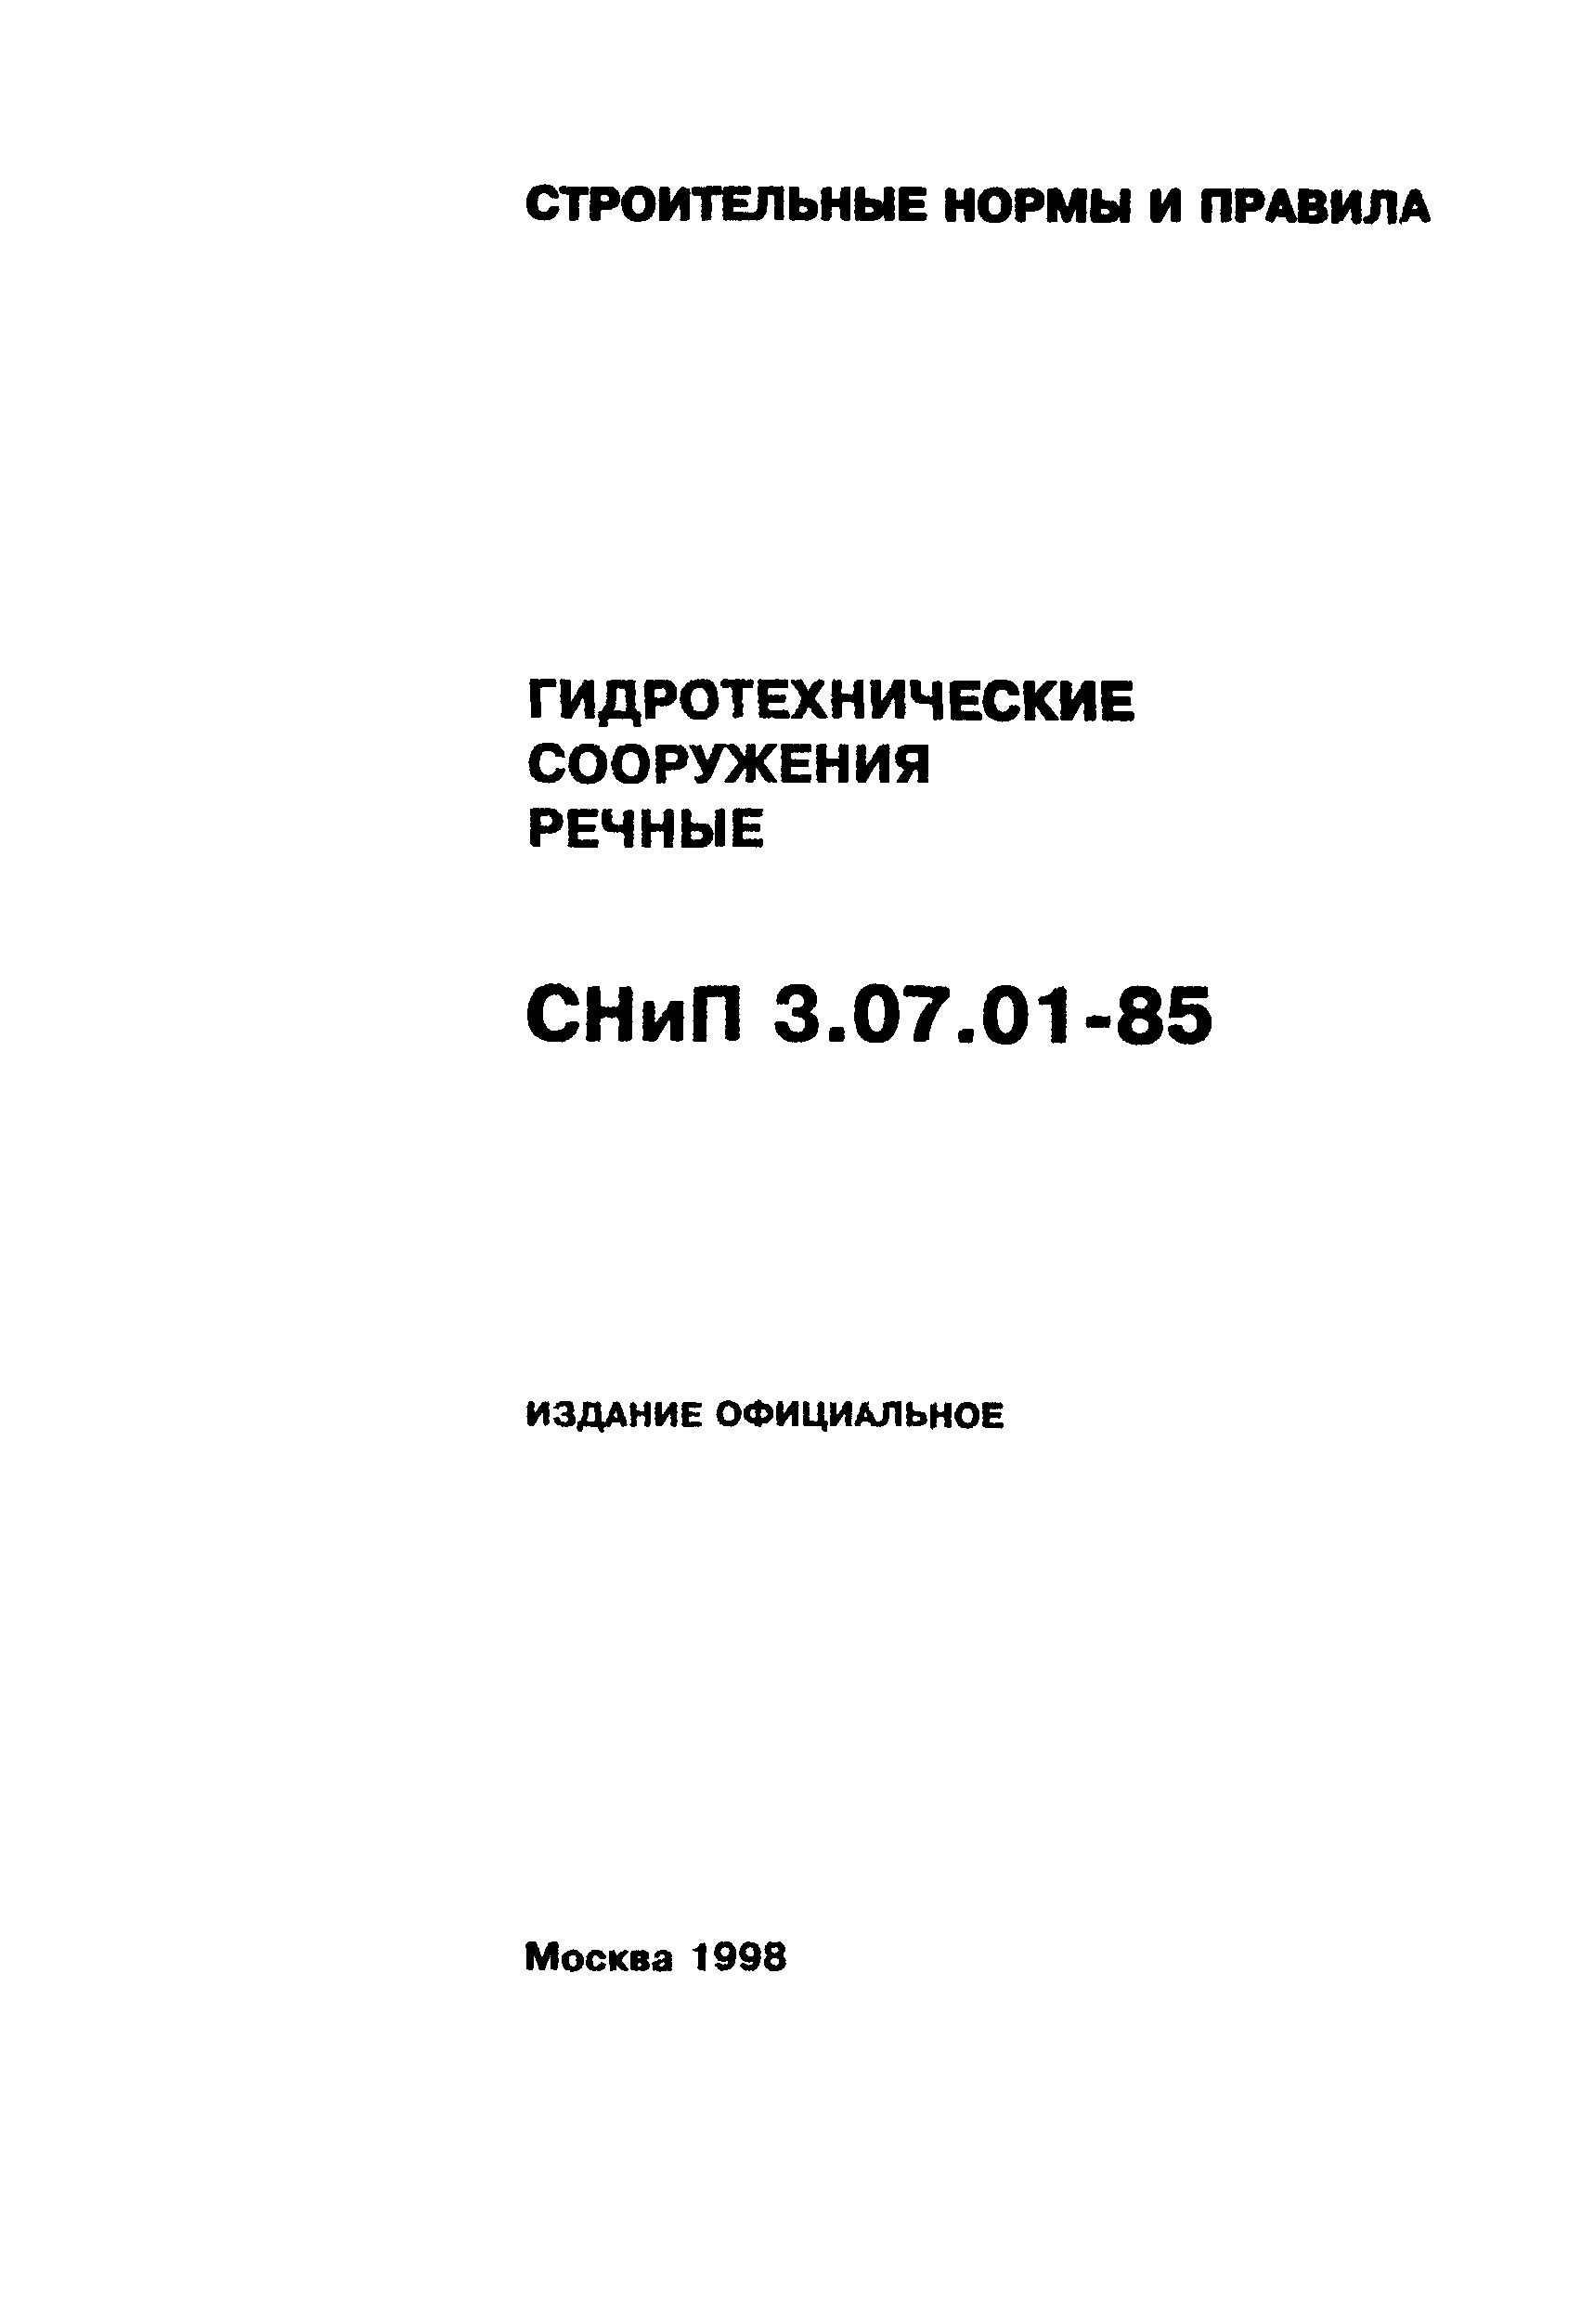 СНиП 3.07.01-85